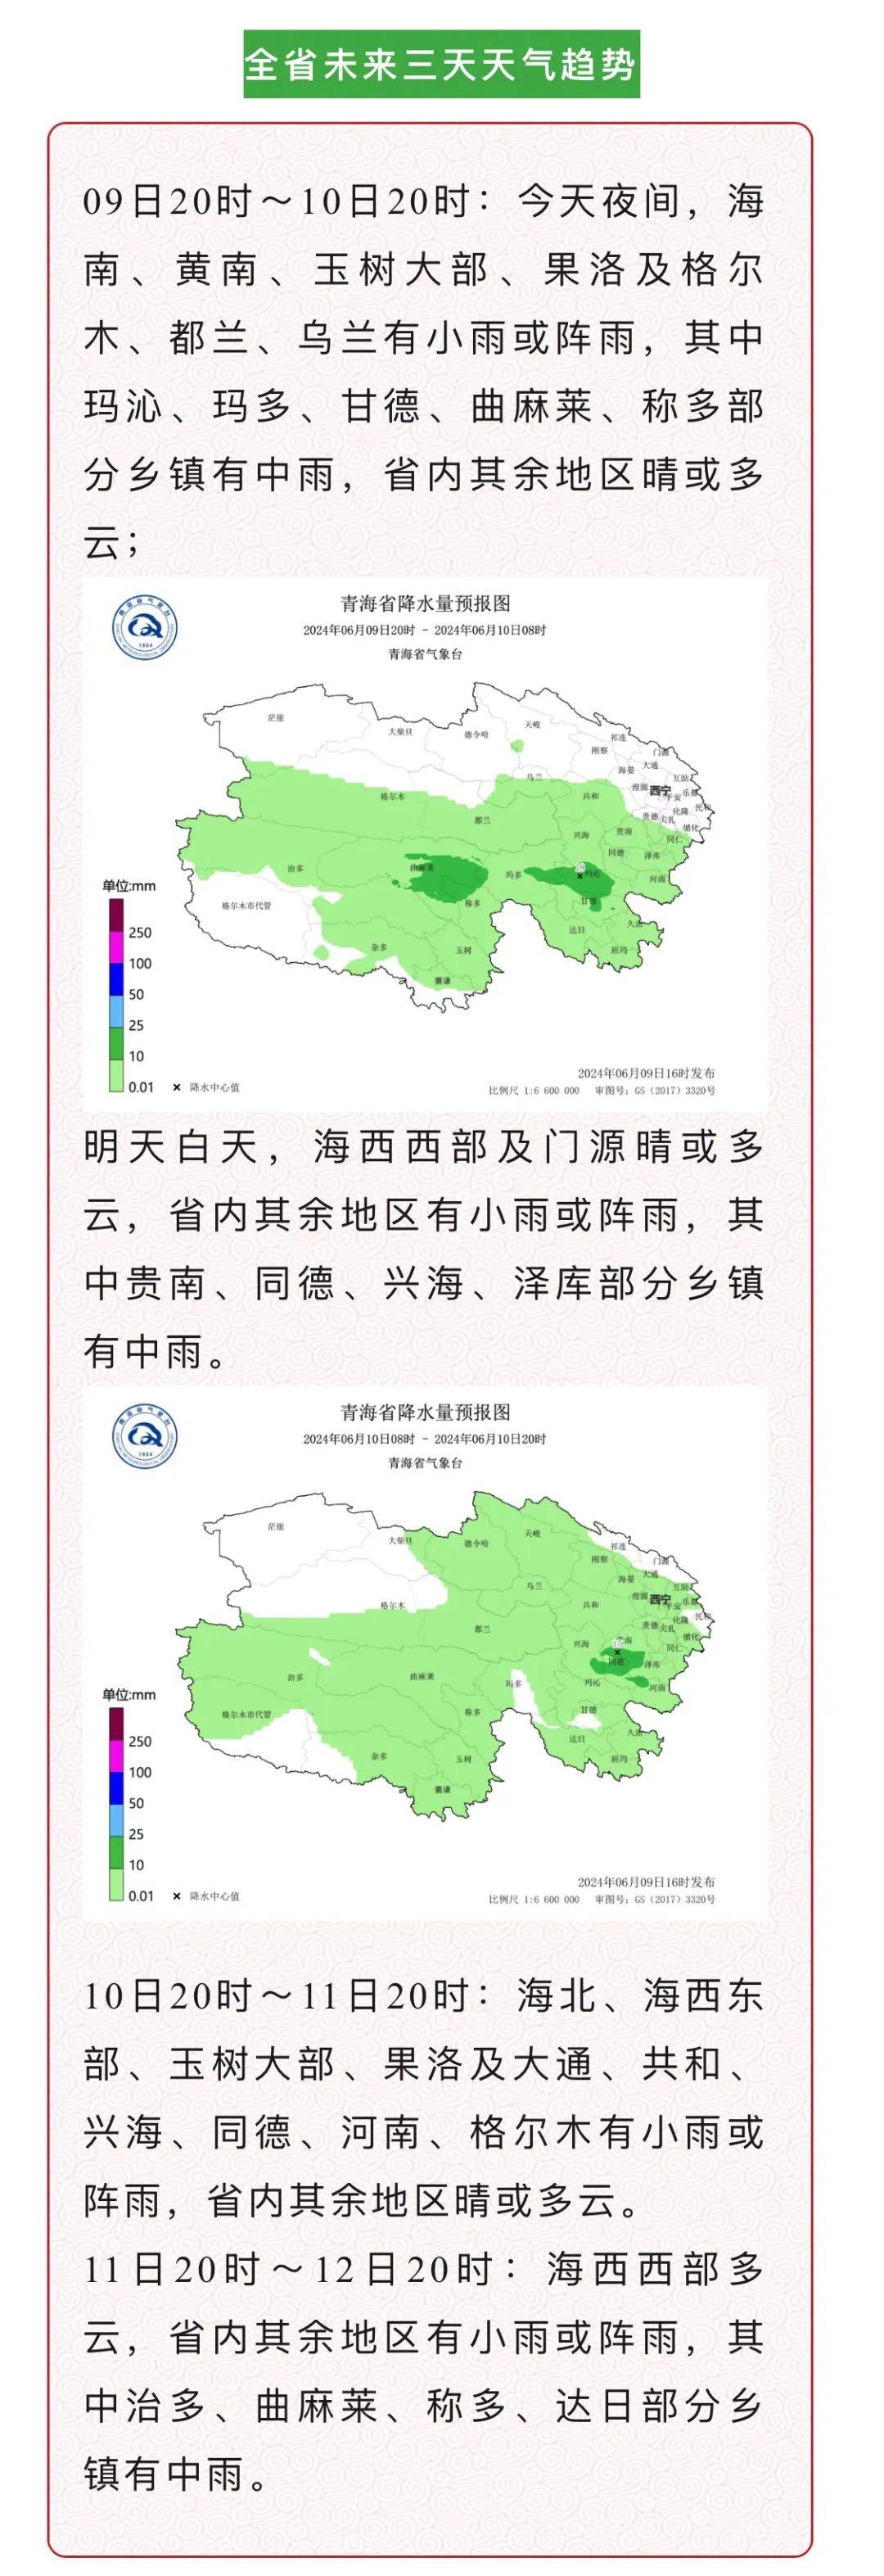 全省主要城镇天气预报西宁未来三天天气预报东部农业区天气全省主要